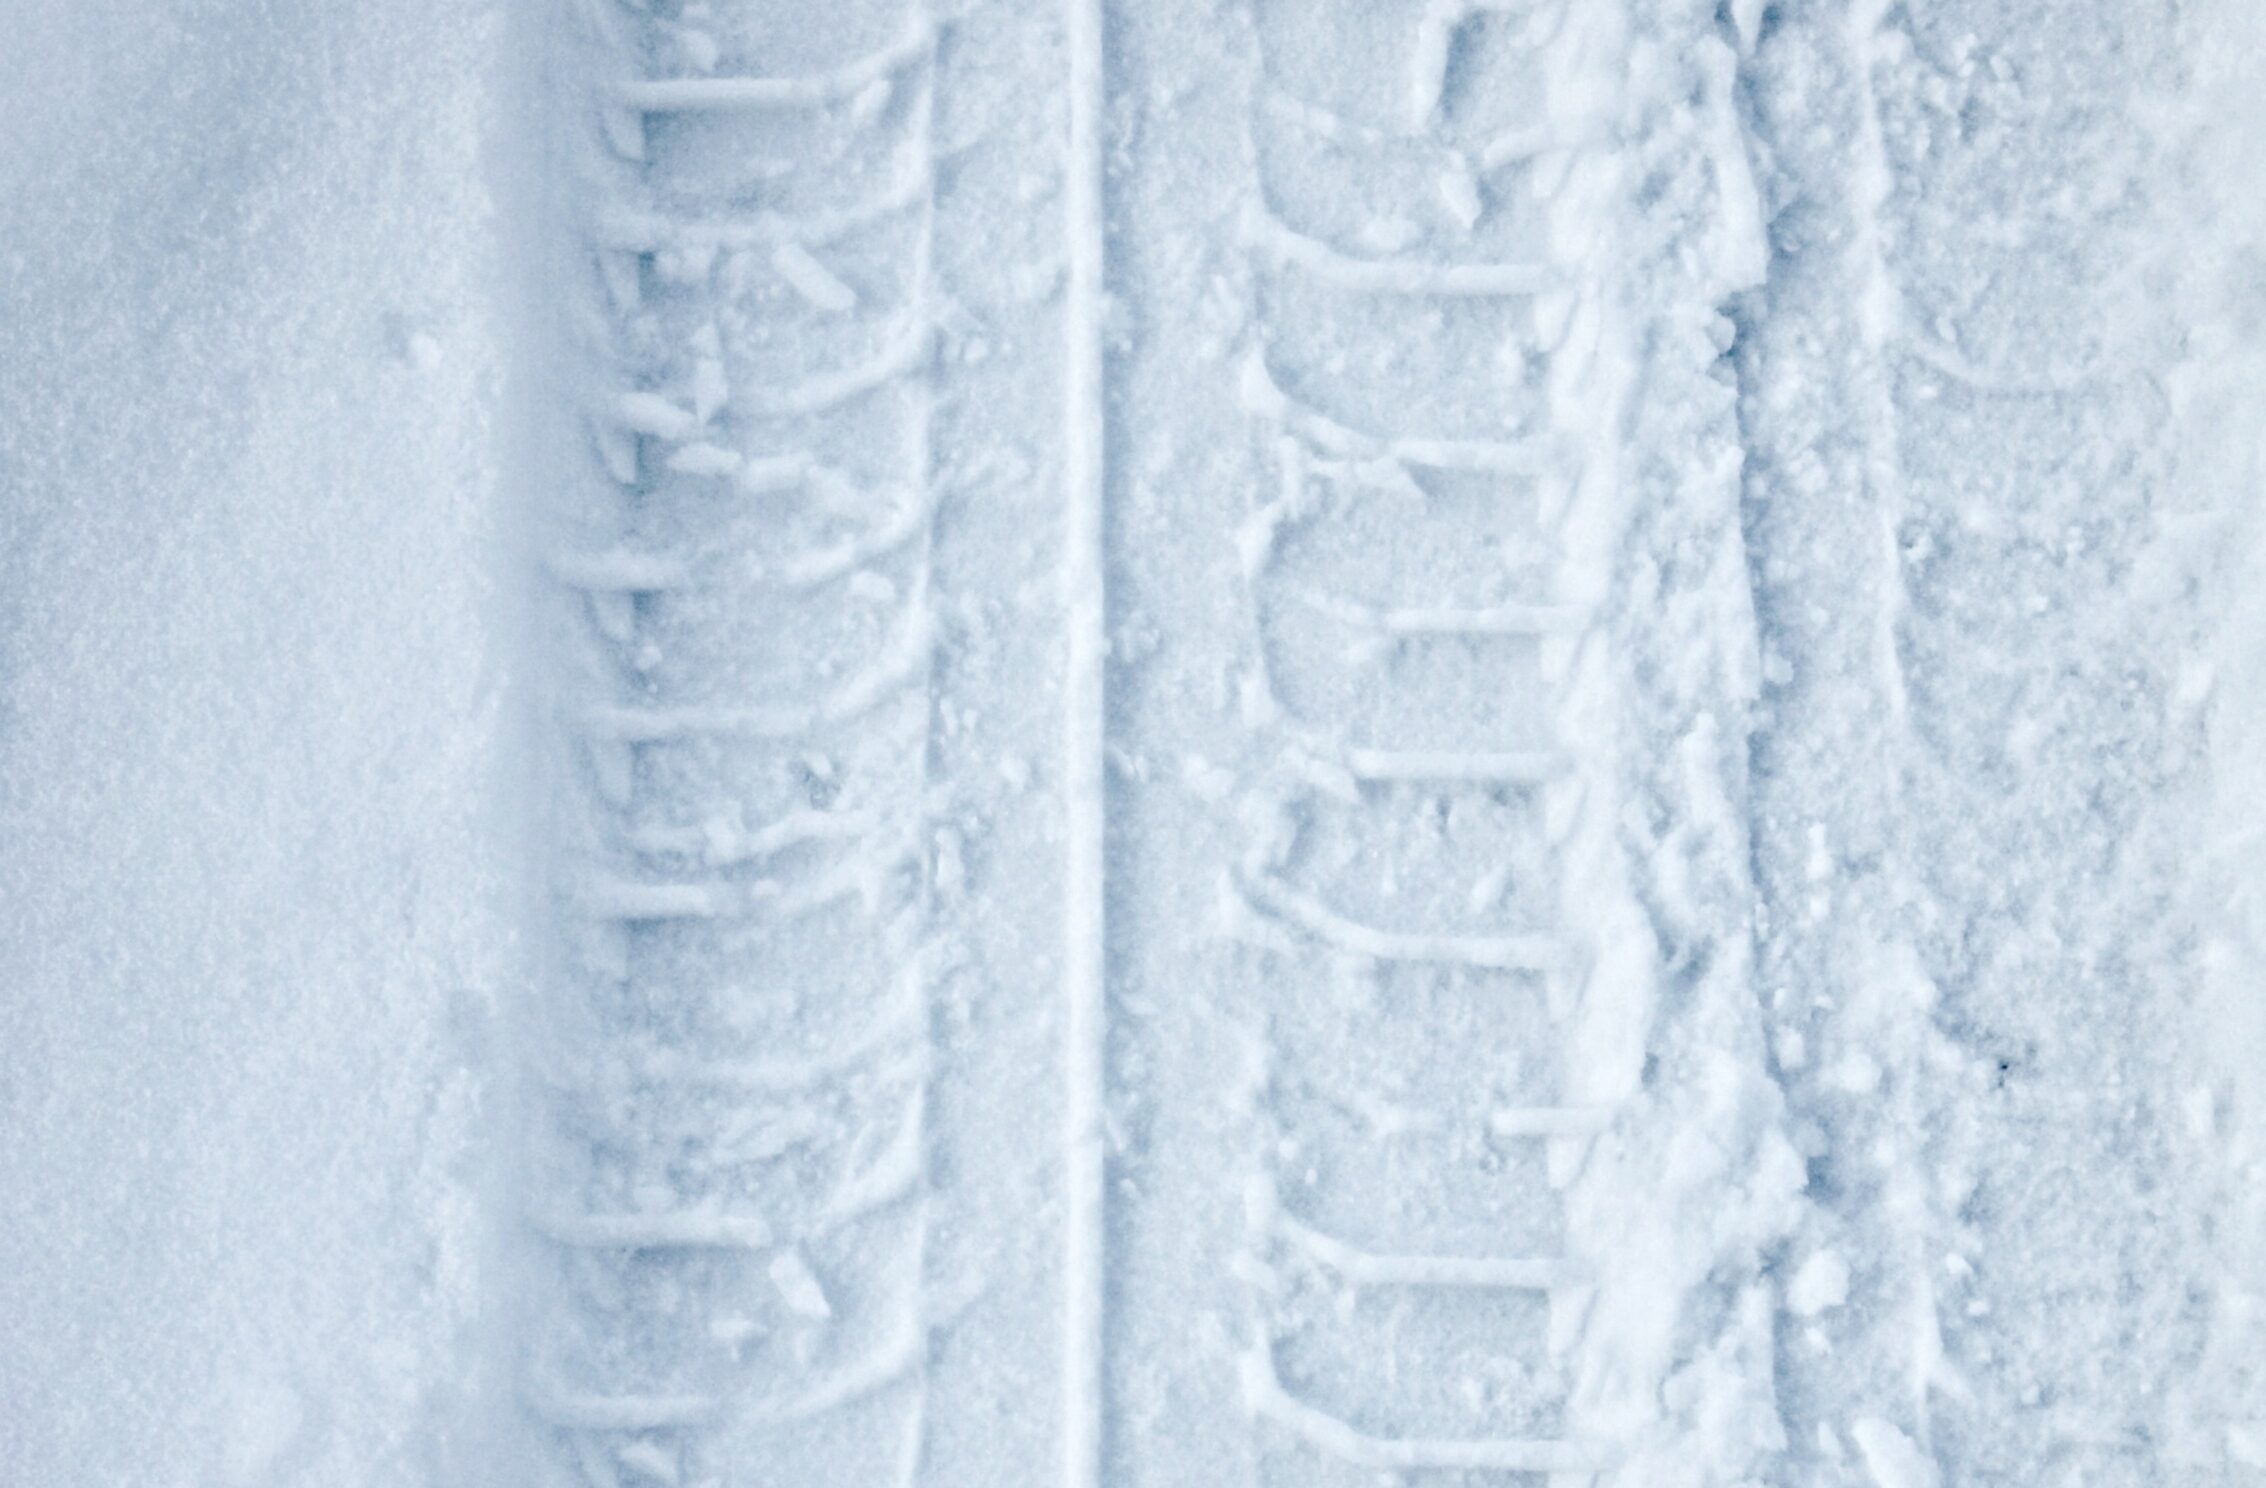 2266x1488 iPad Mini wallpapers Tyre Track Snow Winter iPad Wallpaper 2266x1488 pixels resolution